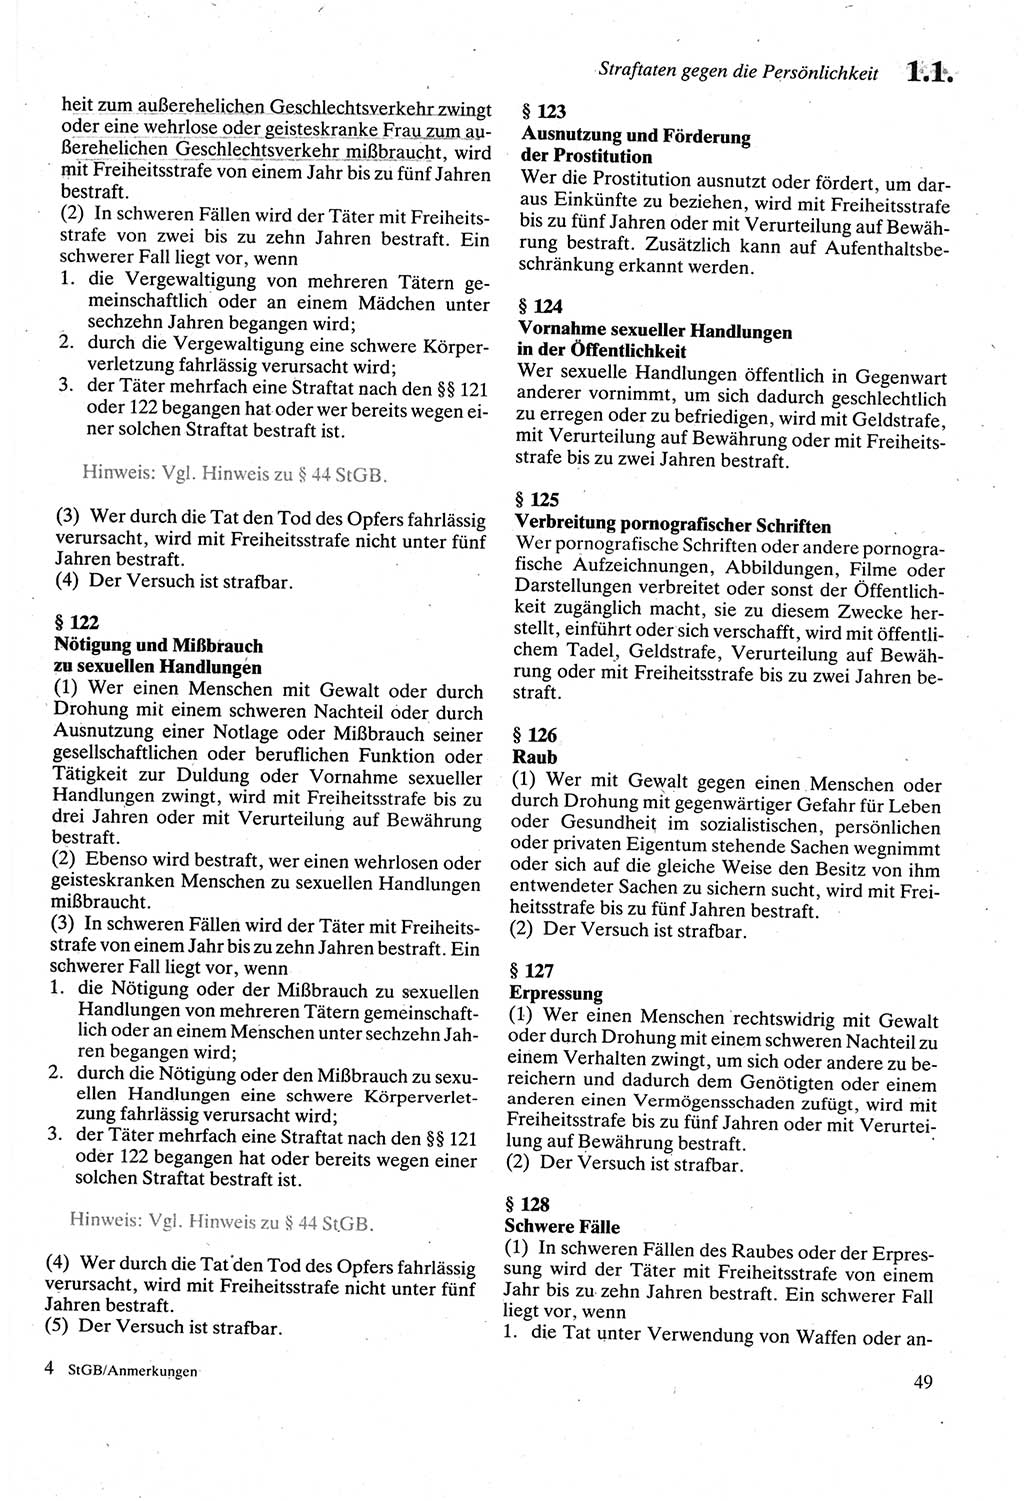 Strafgesetzbuch (StGB) der Deutschen Demokratischen Republik (DDR) sowie angrenzende Gesetze und Bestimmungen 1979, Seite 49 (StGB DDR Ges. Best. 1979, S. 49)